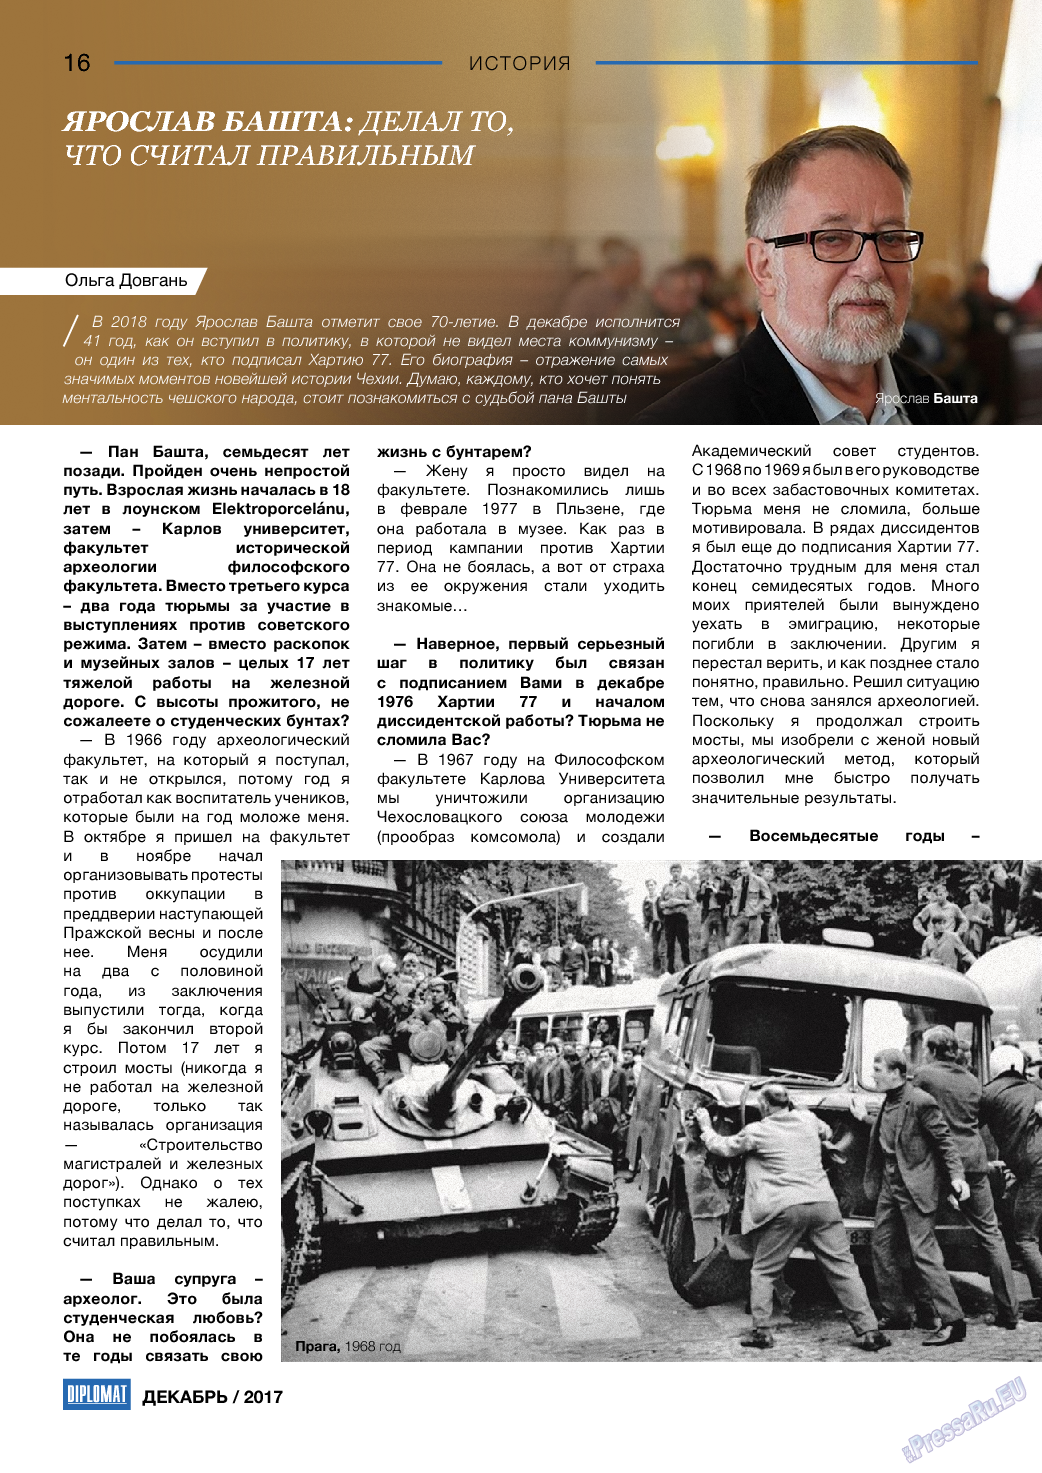 Diplomat, газета. 2017 №99 стр.16